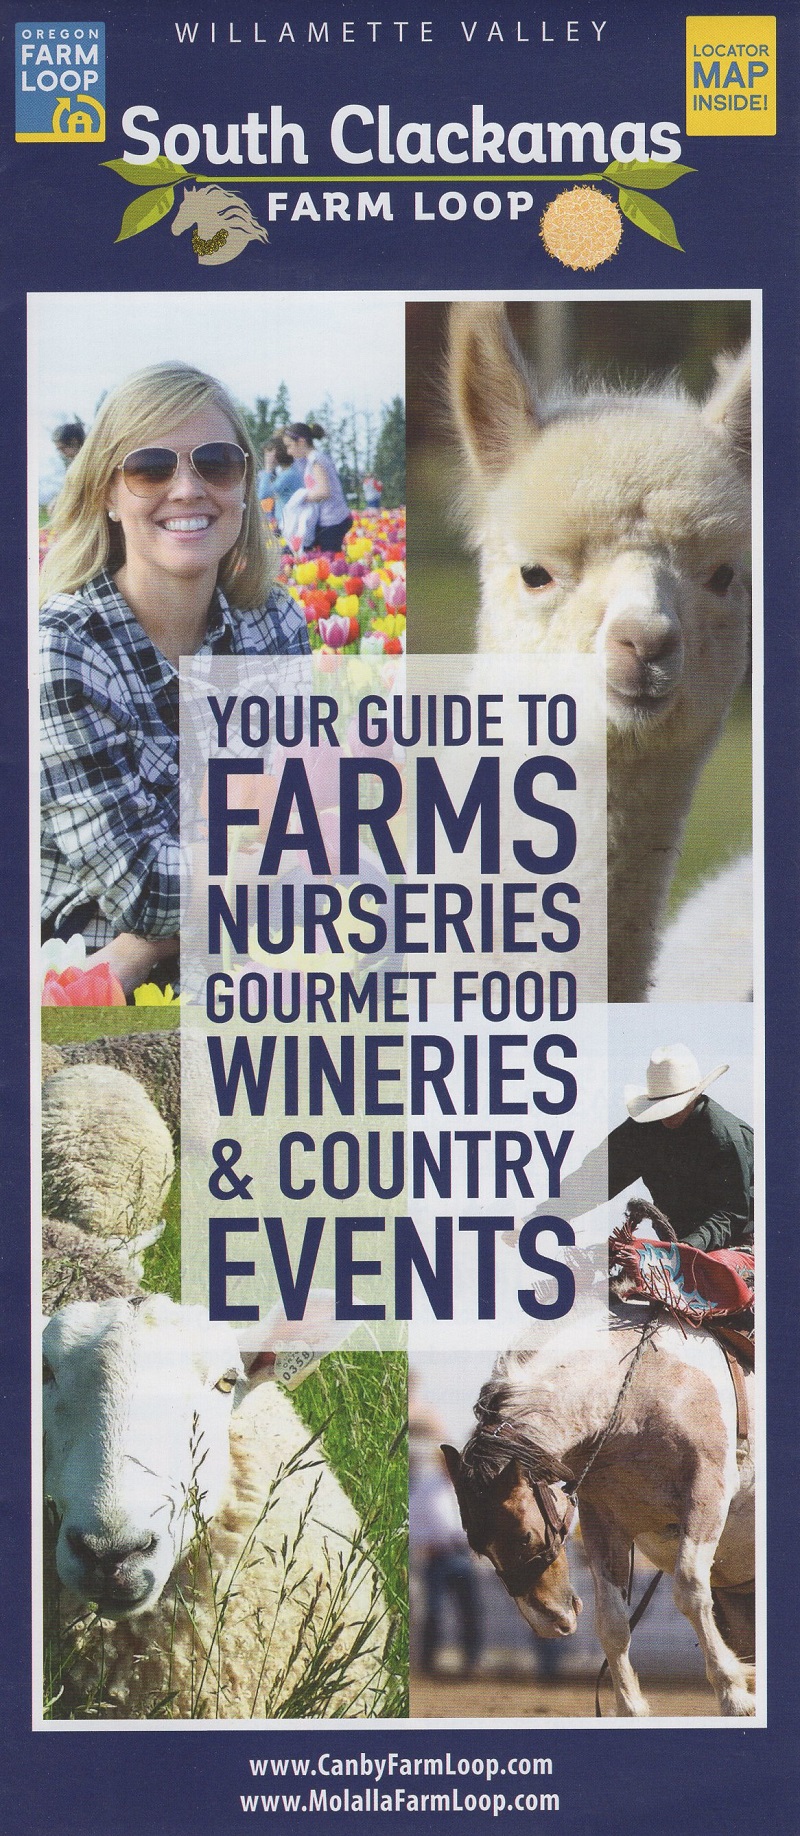 South Clackamas Farm Loop brochure full size